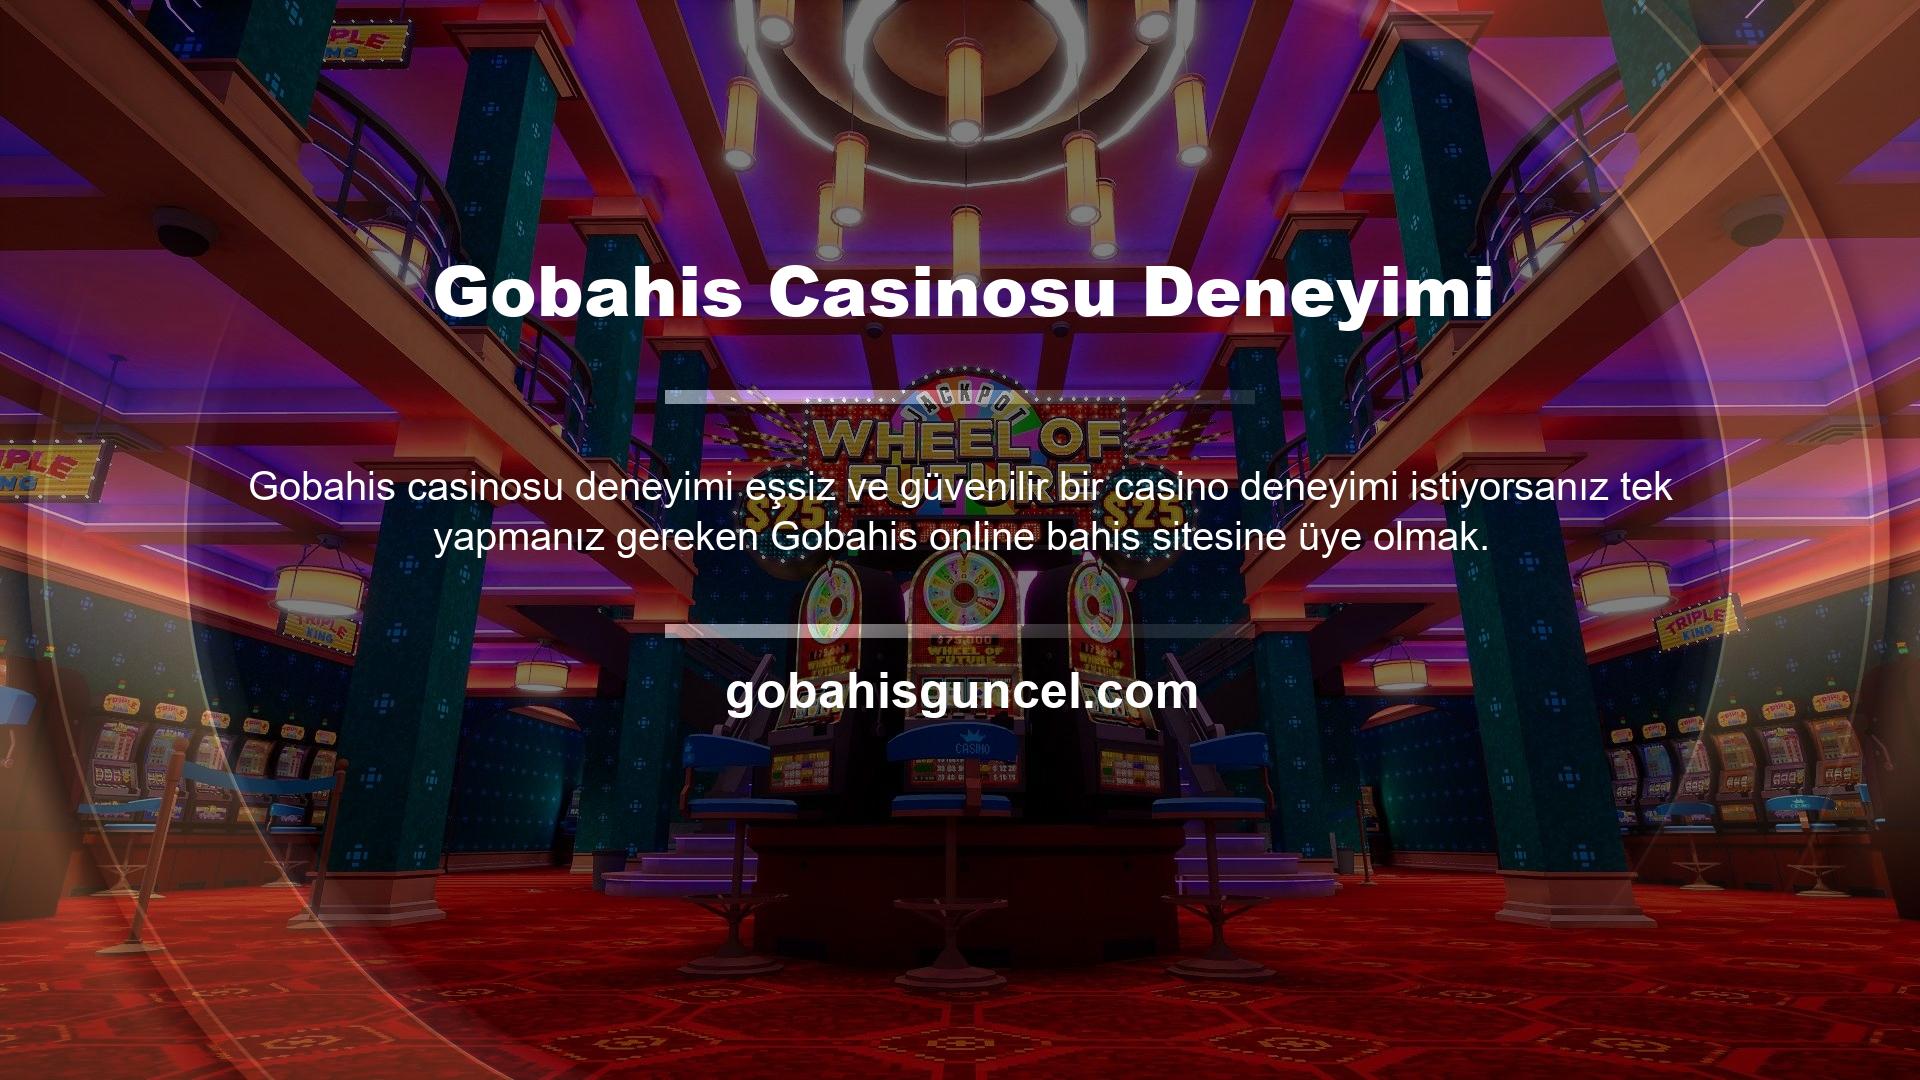 Hesabınızla siteye giriş yaptığınızda daha önce hiç deneyimlemediğiniz casino hizmetleri ile karşılaşacaksınız